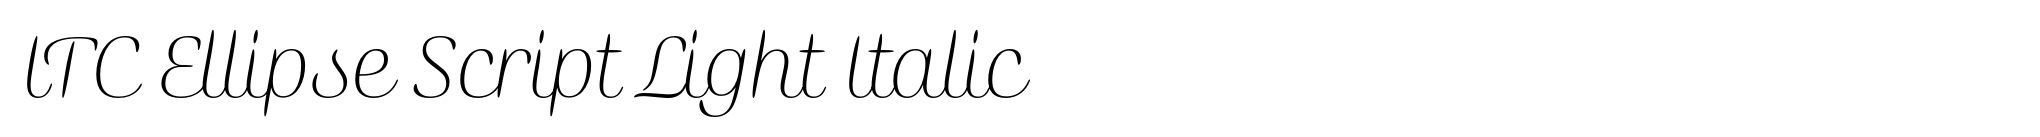 ITC Ellipse Script Light Italic image